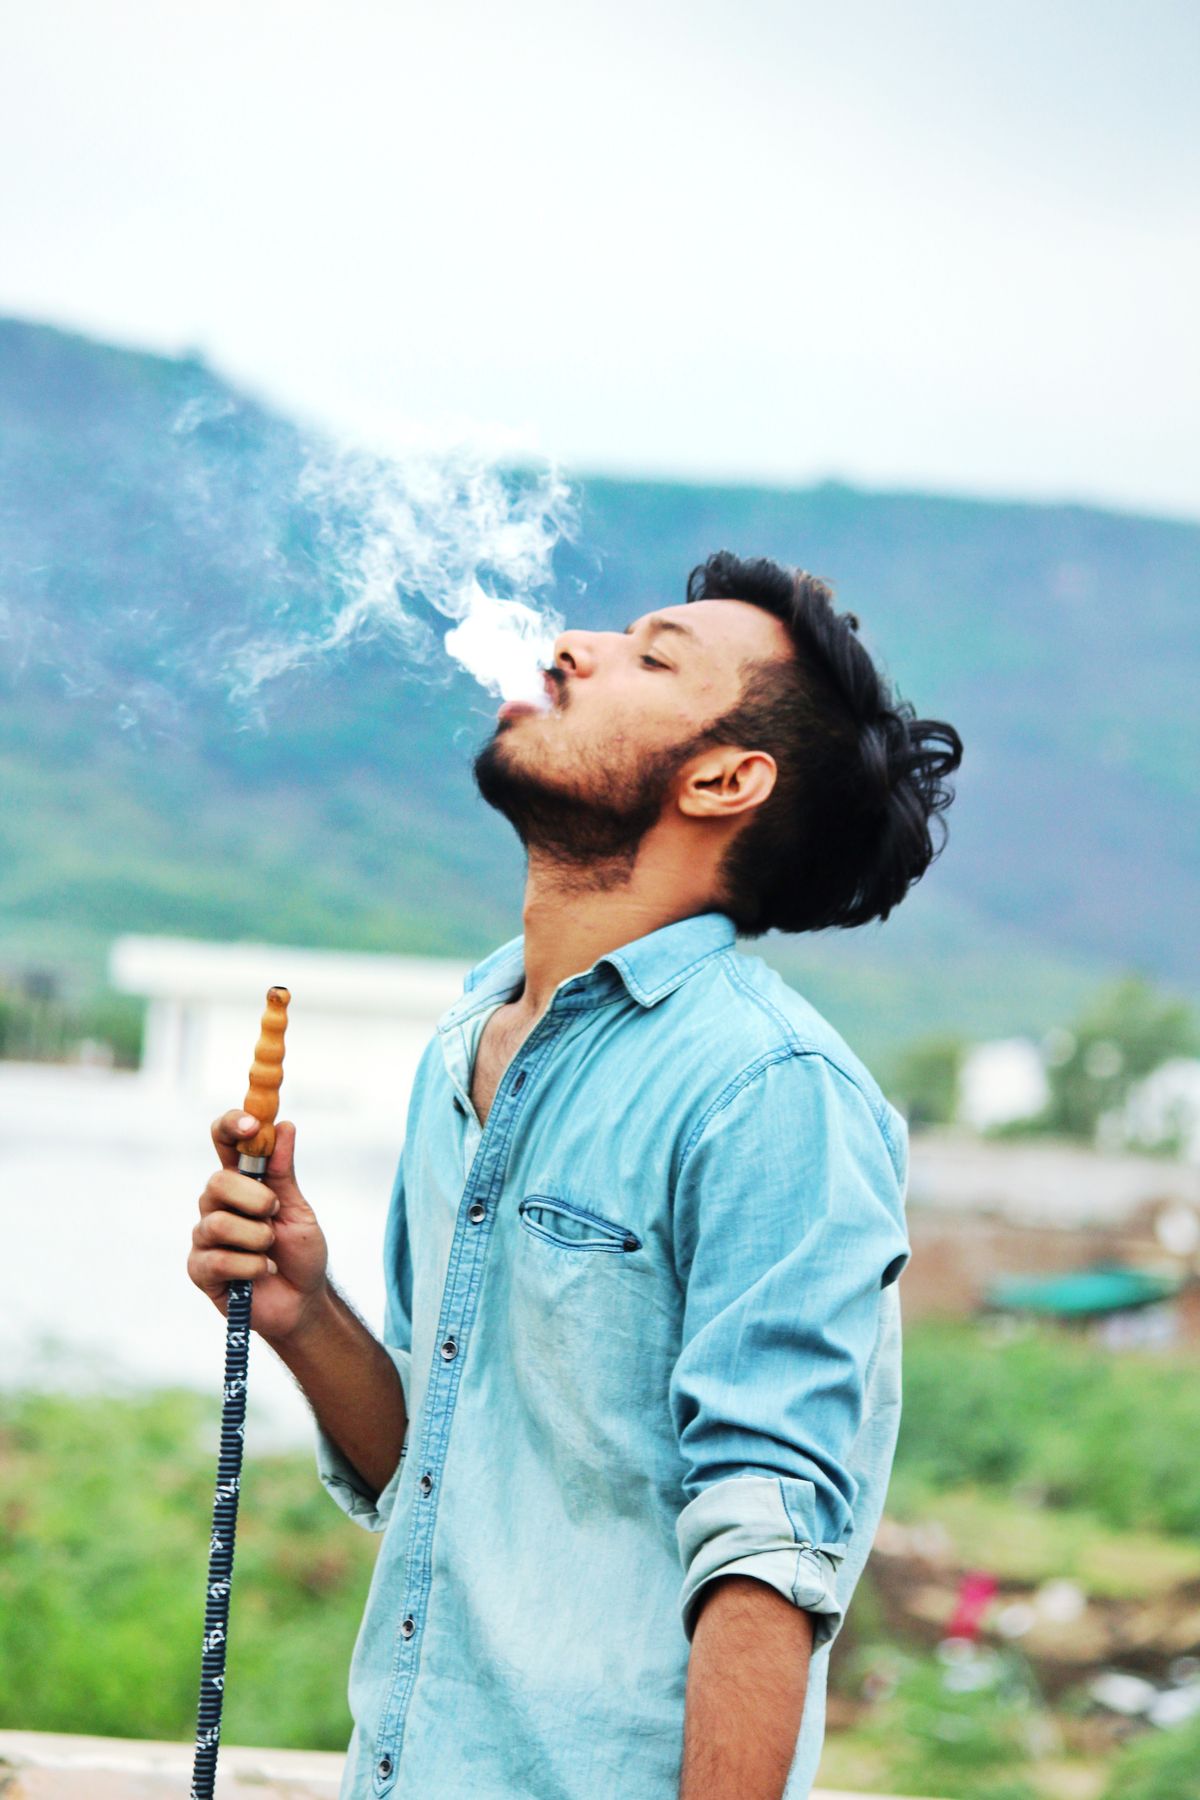 Wasserpfeifen: So schädlich ist Shisha-Rauchen wirklich